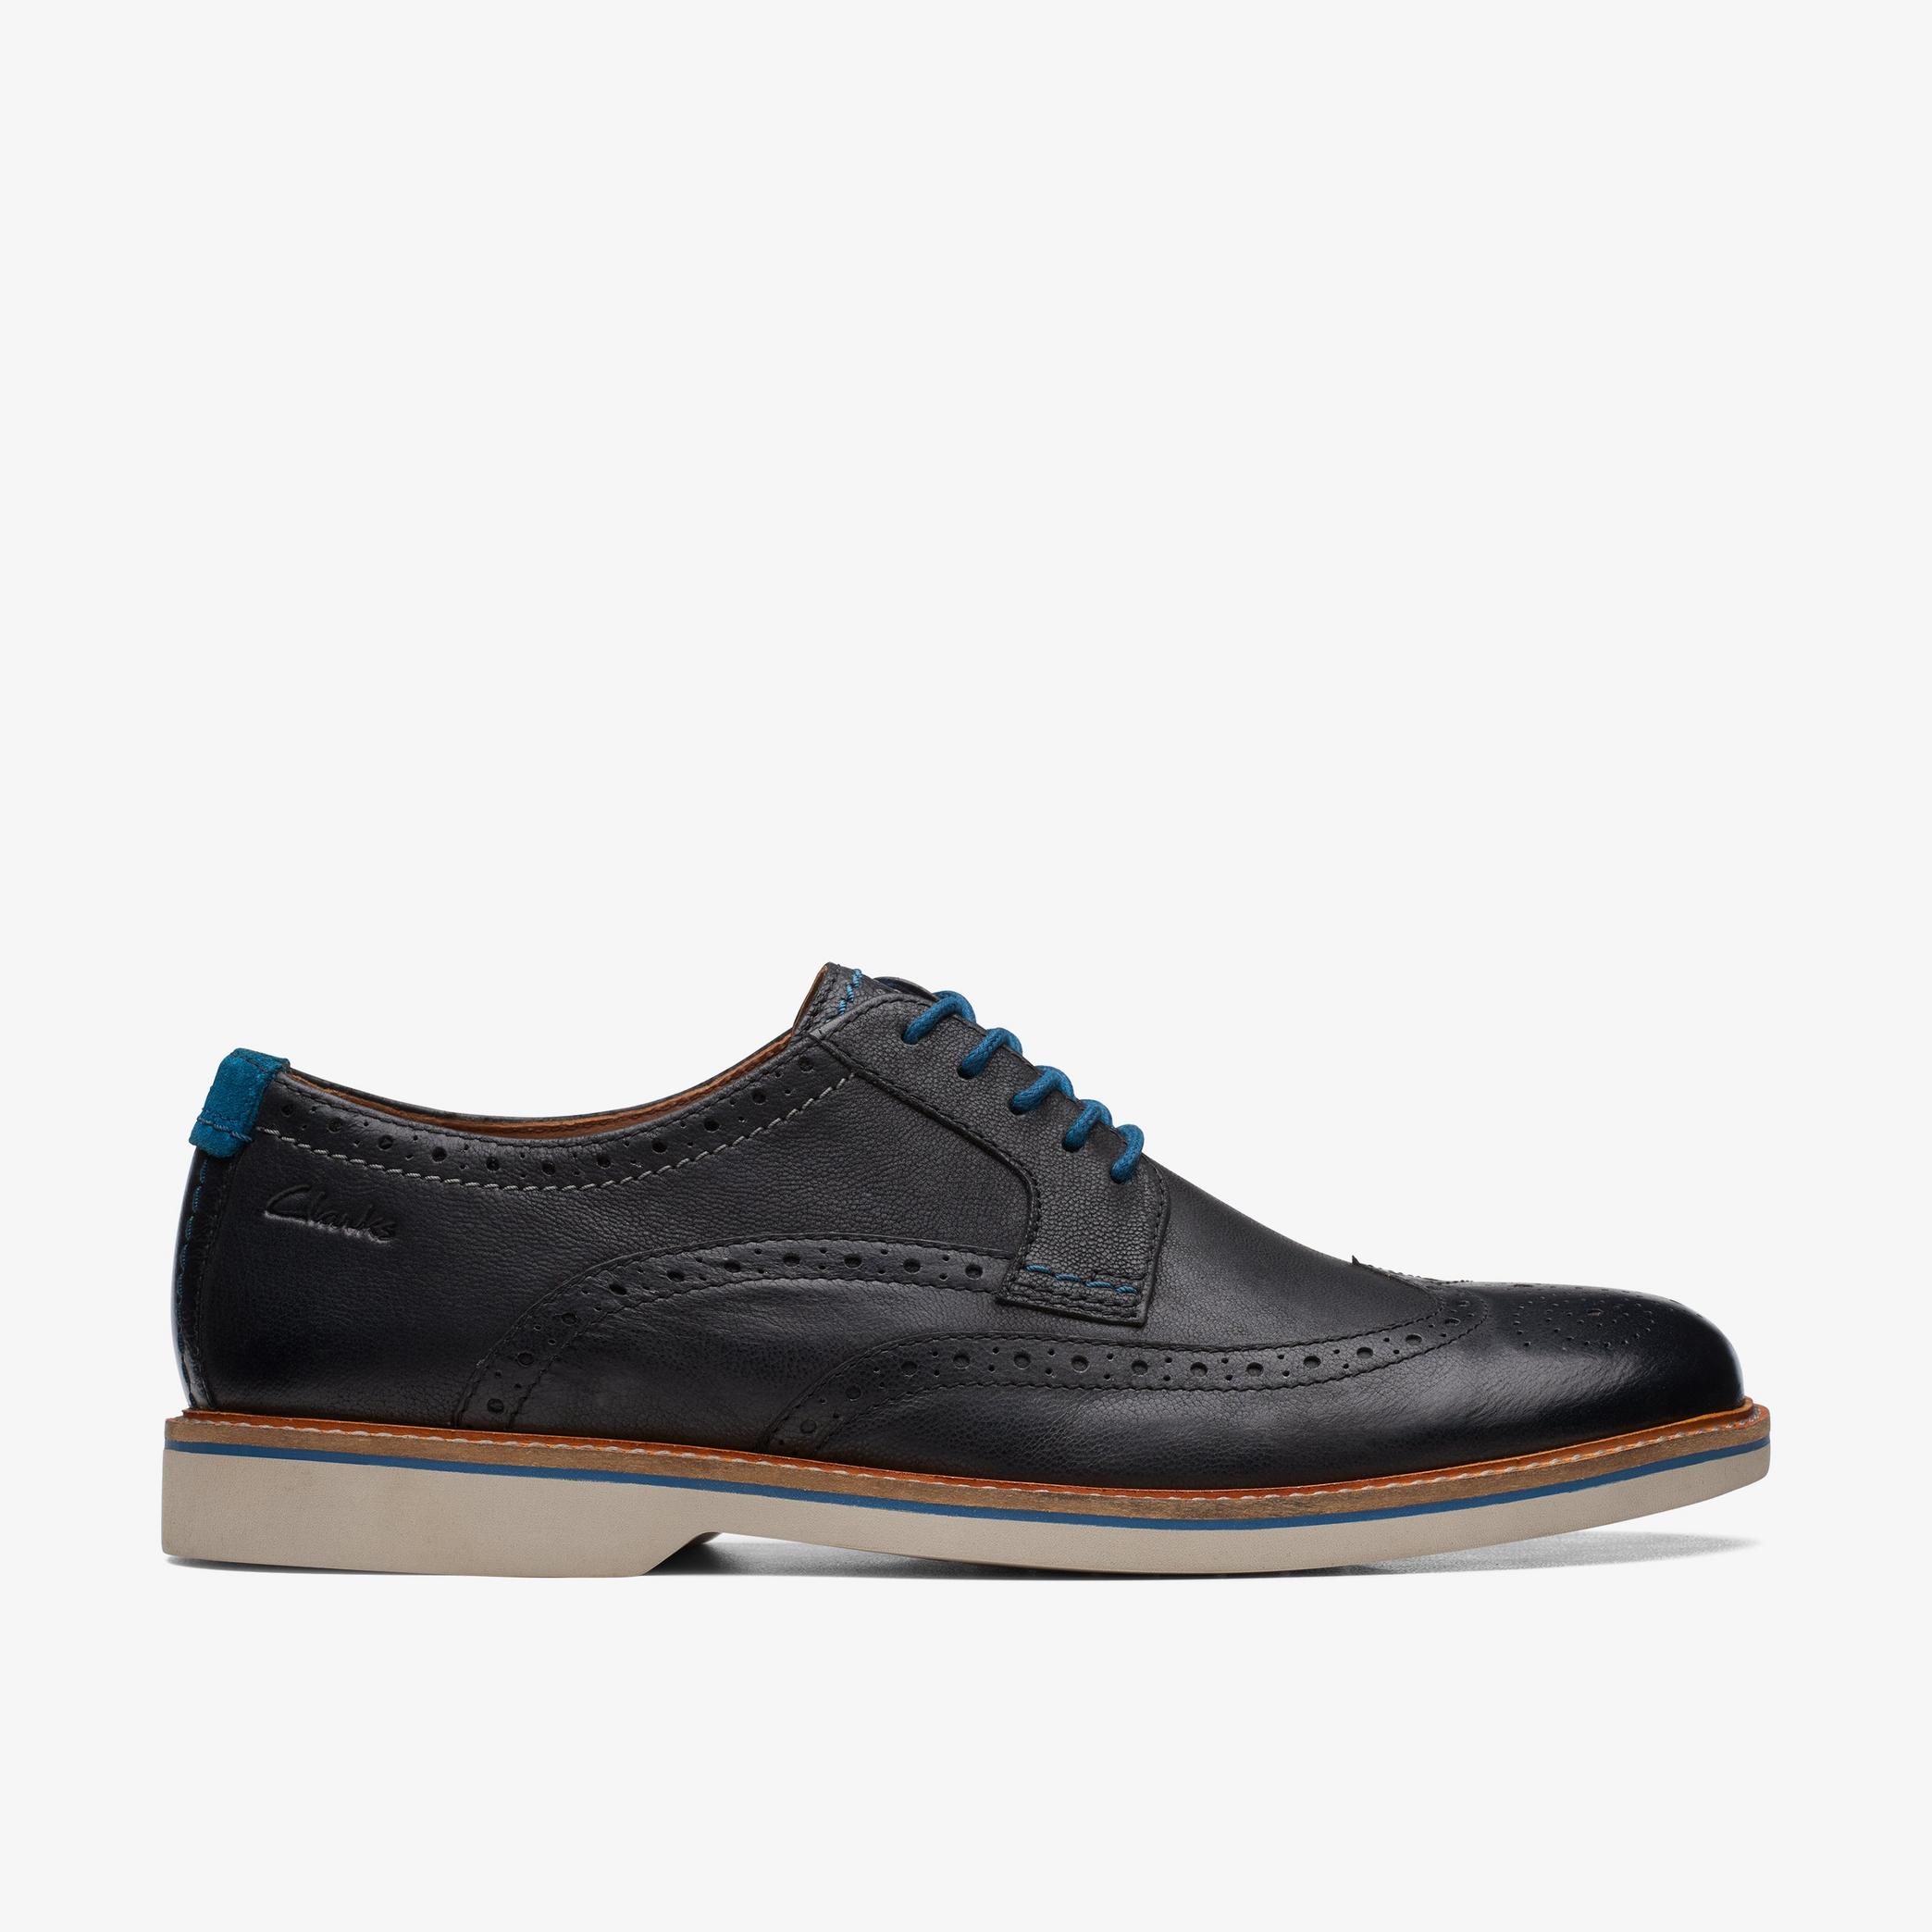 Mens Atticus LT Limit Black Leather Shoes | Clarks UK